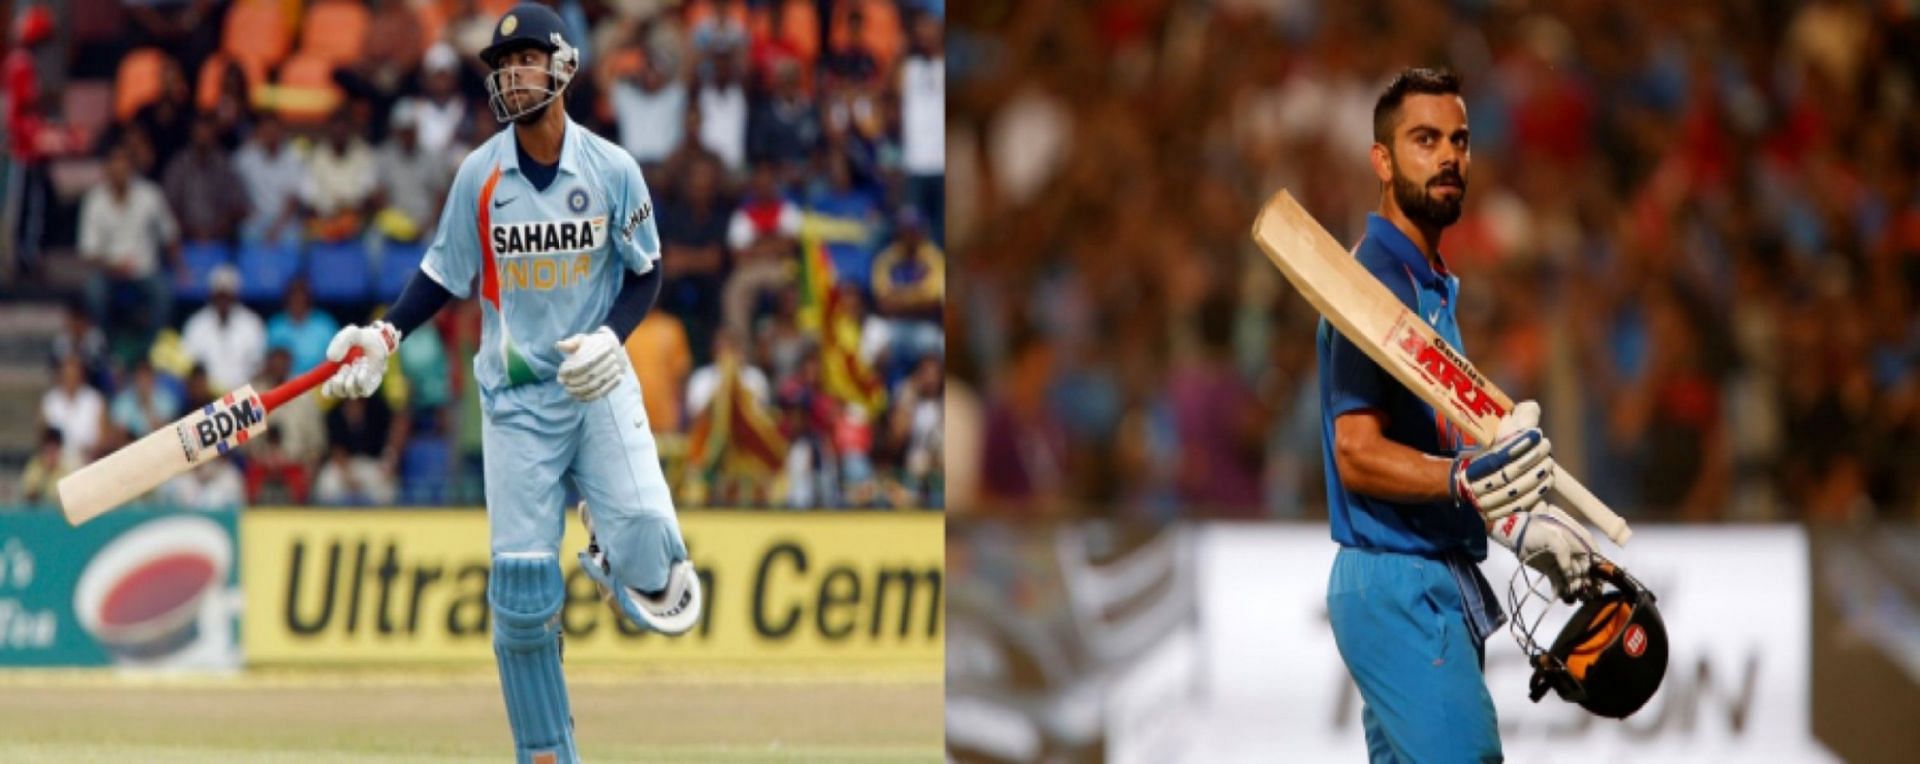 Virat Kohli made his ODI debut 14 years ago today.